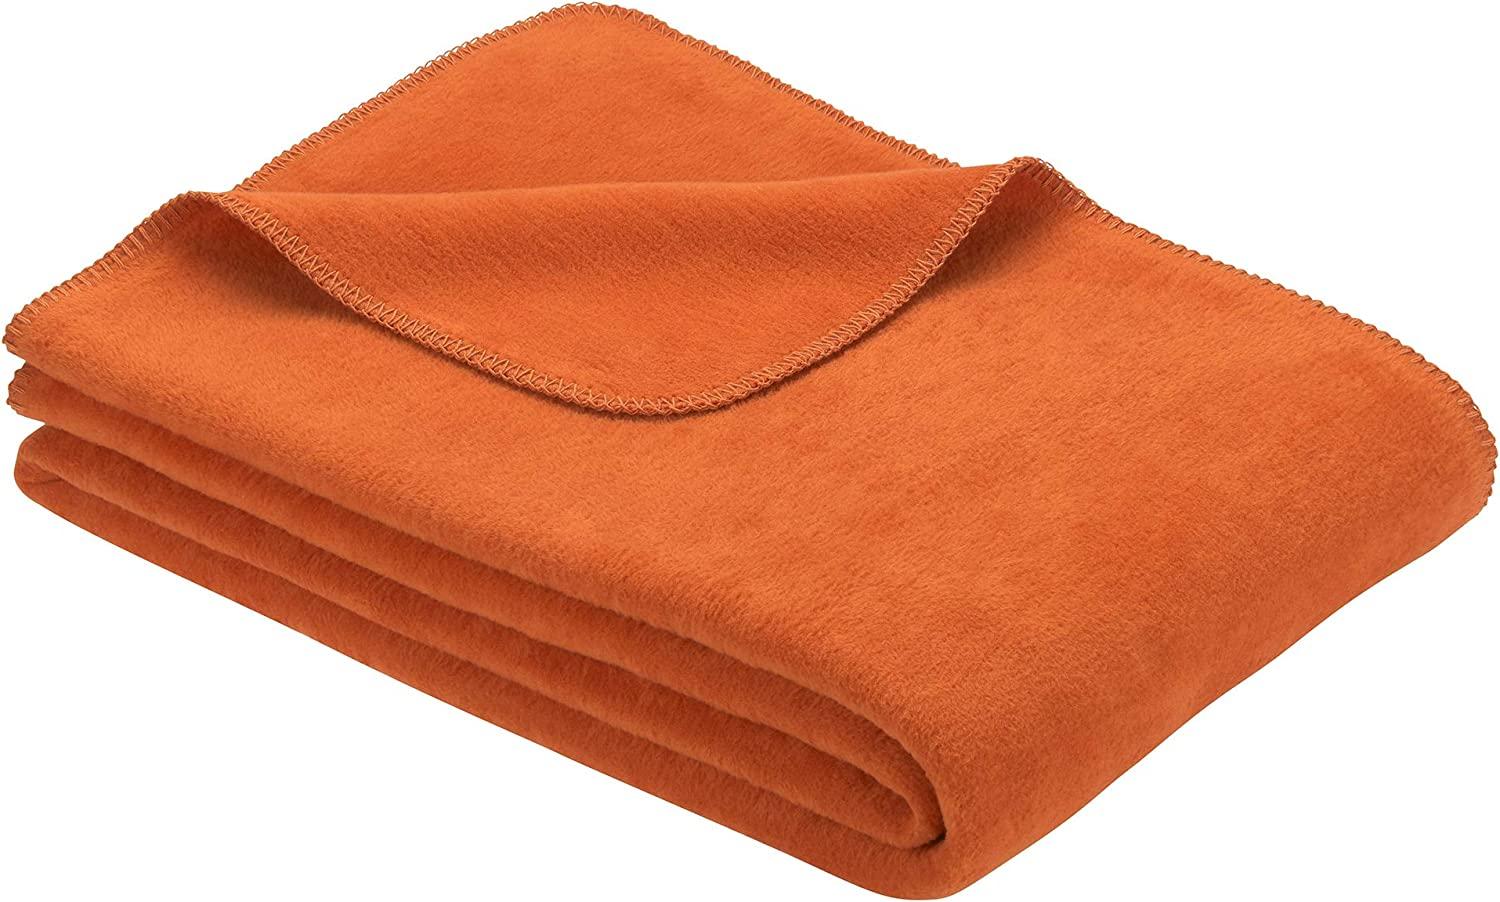 Ibena Bergamo Baumwolldecke 150x200 cm - Kuscheldecke orange einfarbig aus Biobaumwolle, hochwertige Markenqualität Made in Germany Bild 1